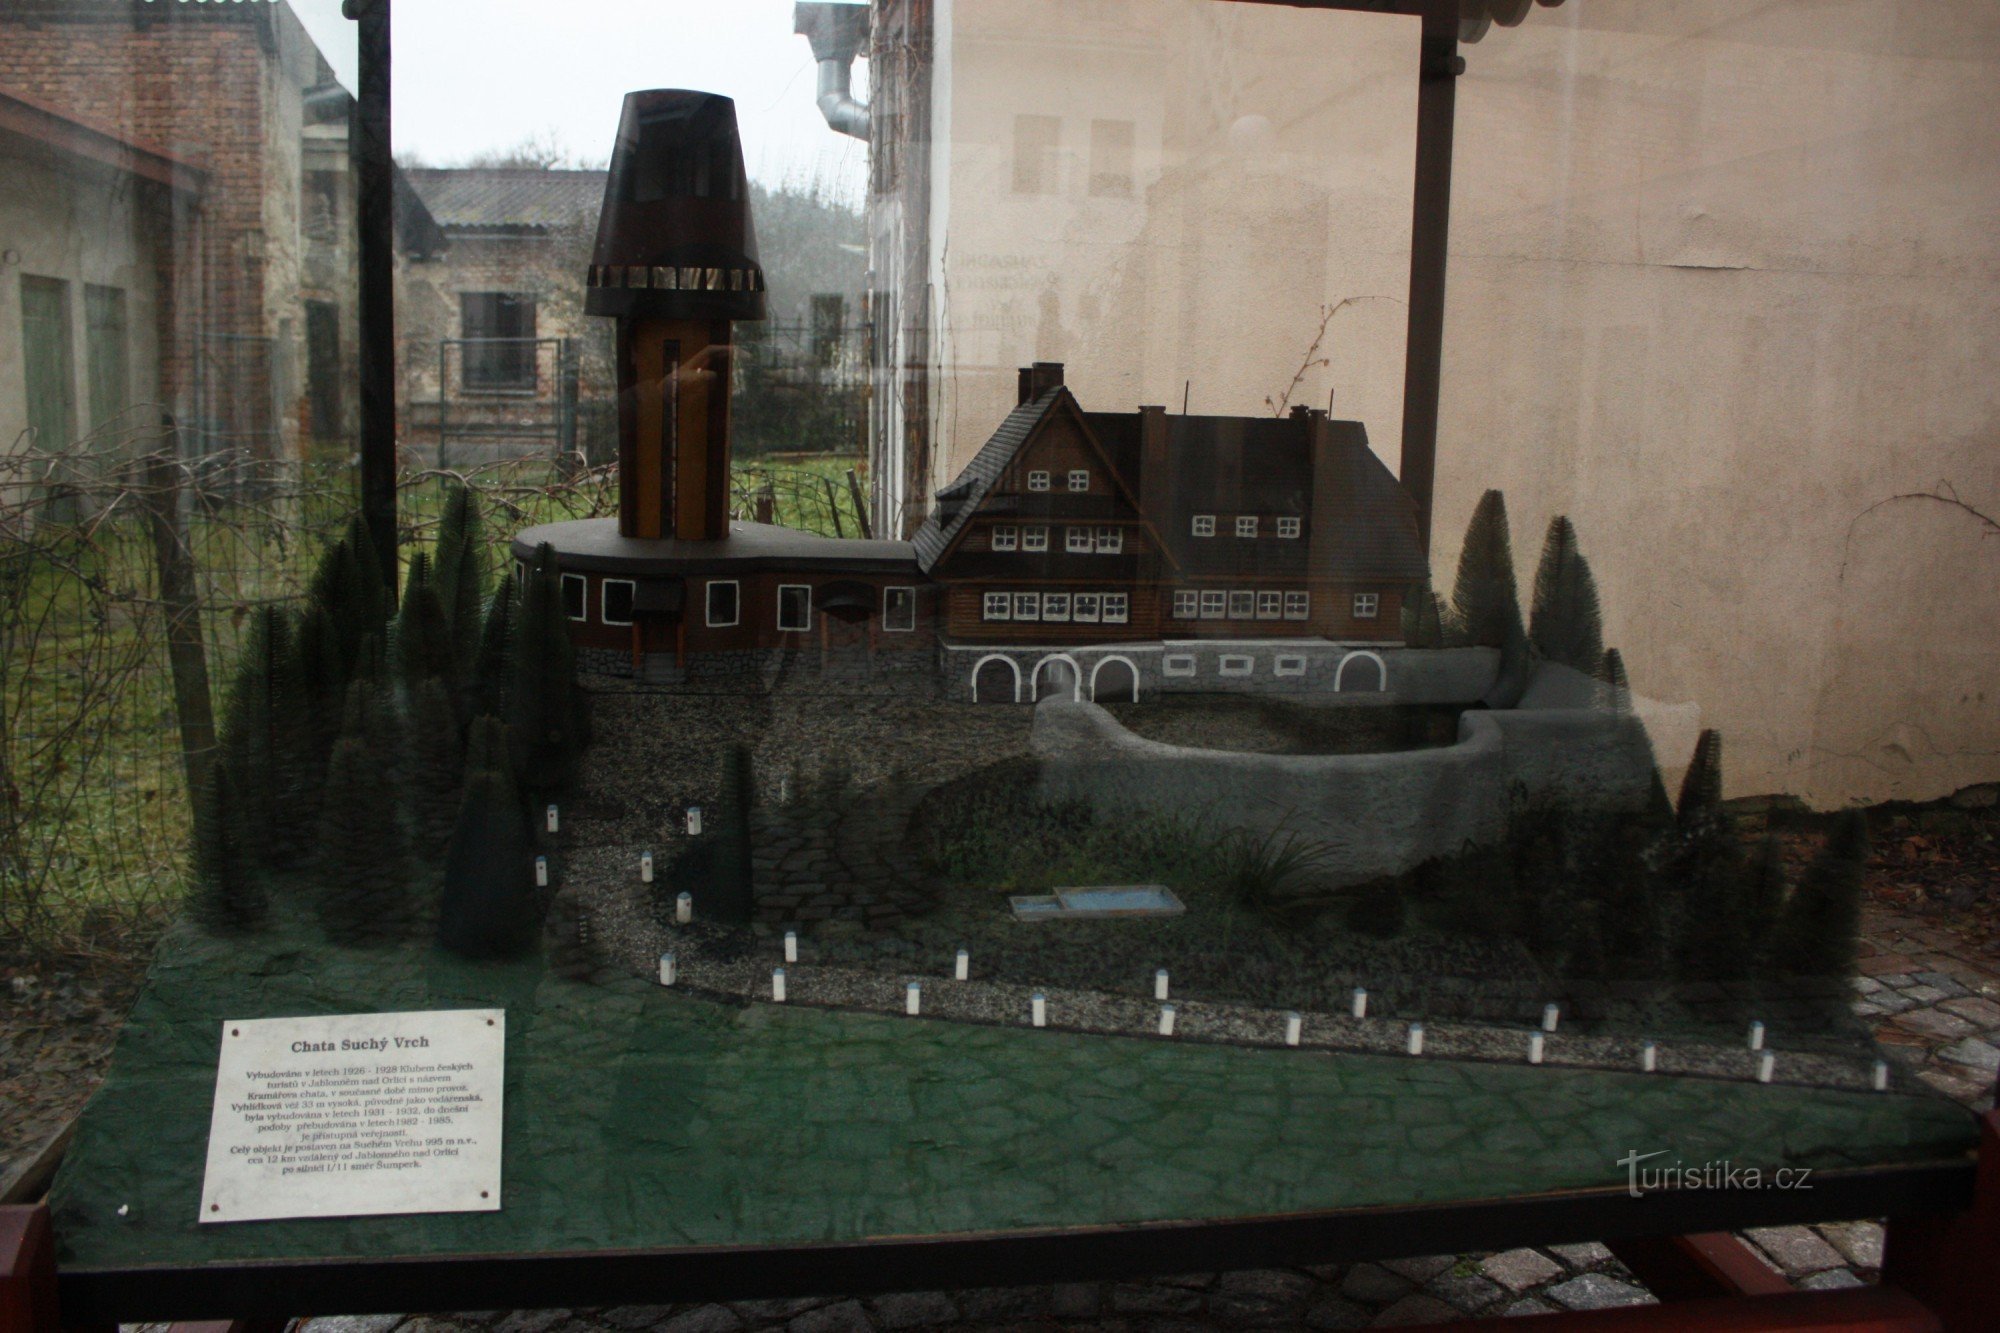 Modelo da casa de campo e torre de vigia em Suché Vrch em Jablonné nas montanhas Orlické